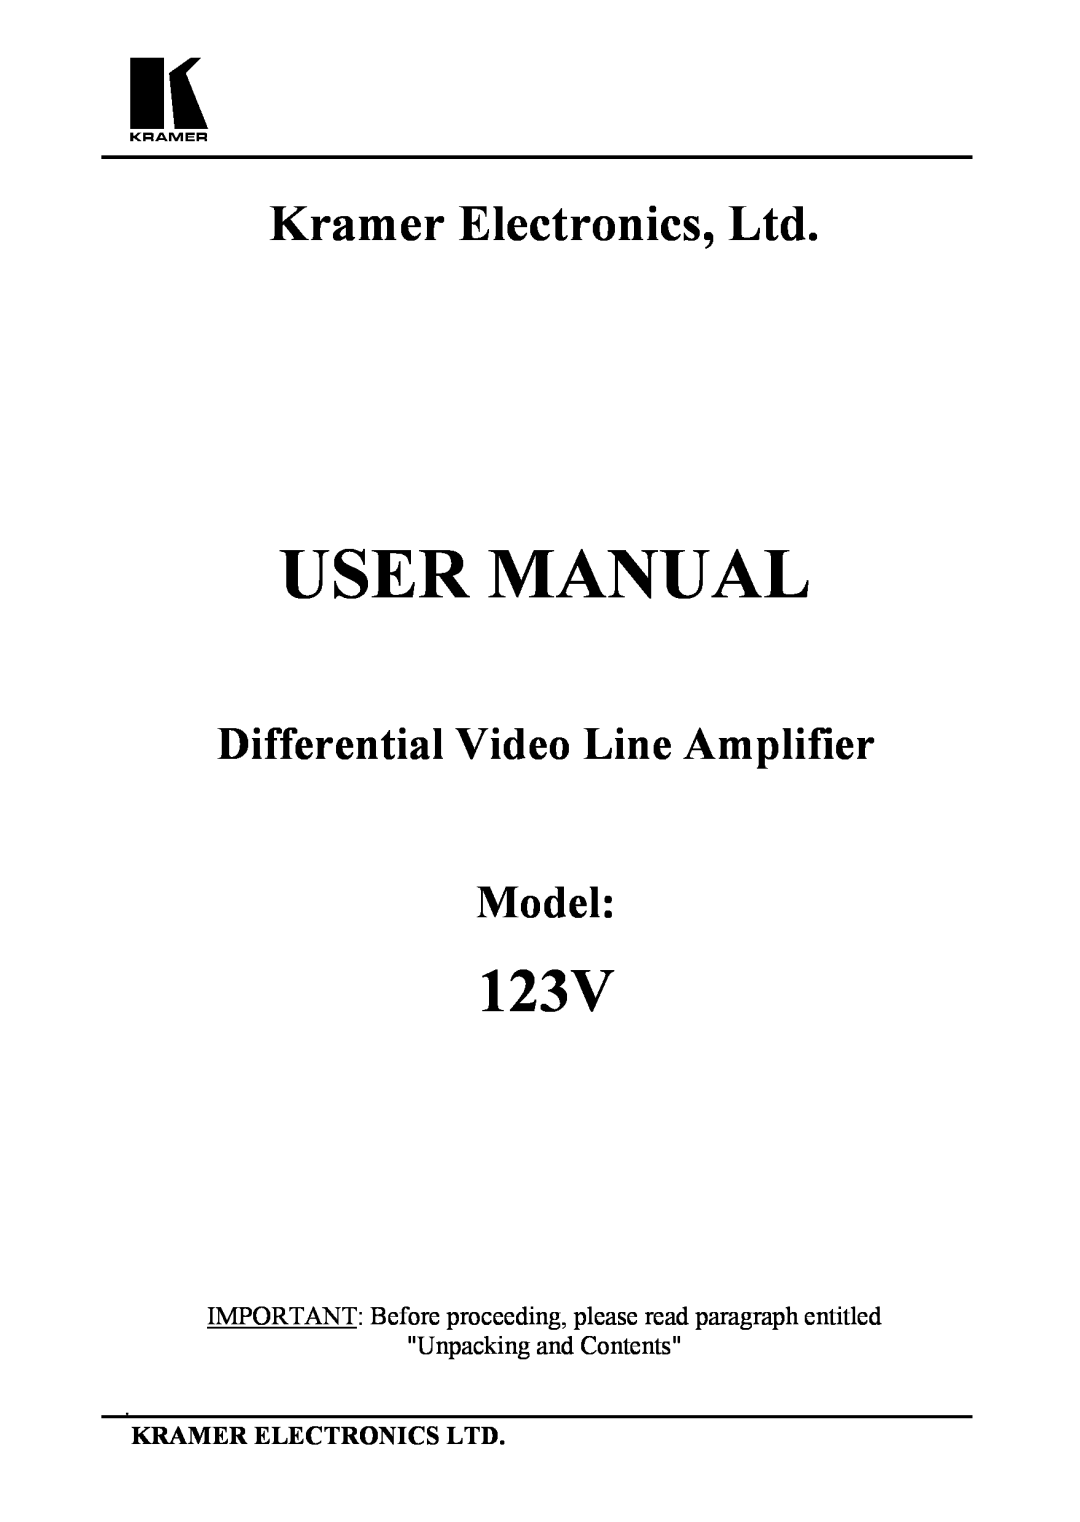 Kramer Electronics 123V user manual User Manual, Differential Video Line Amplifier Model 